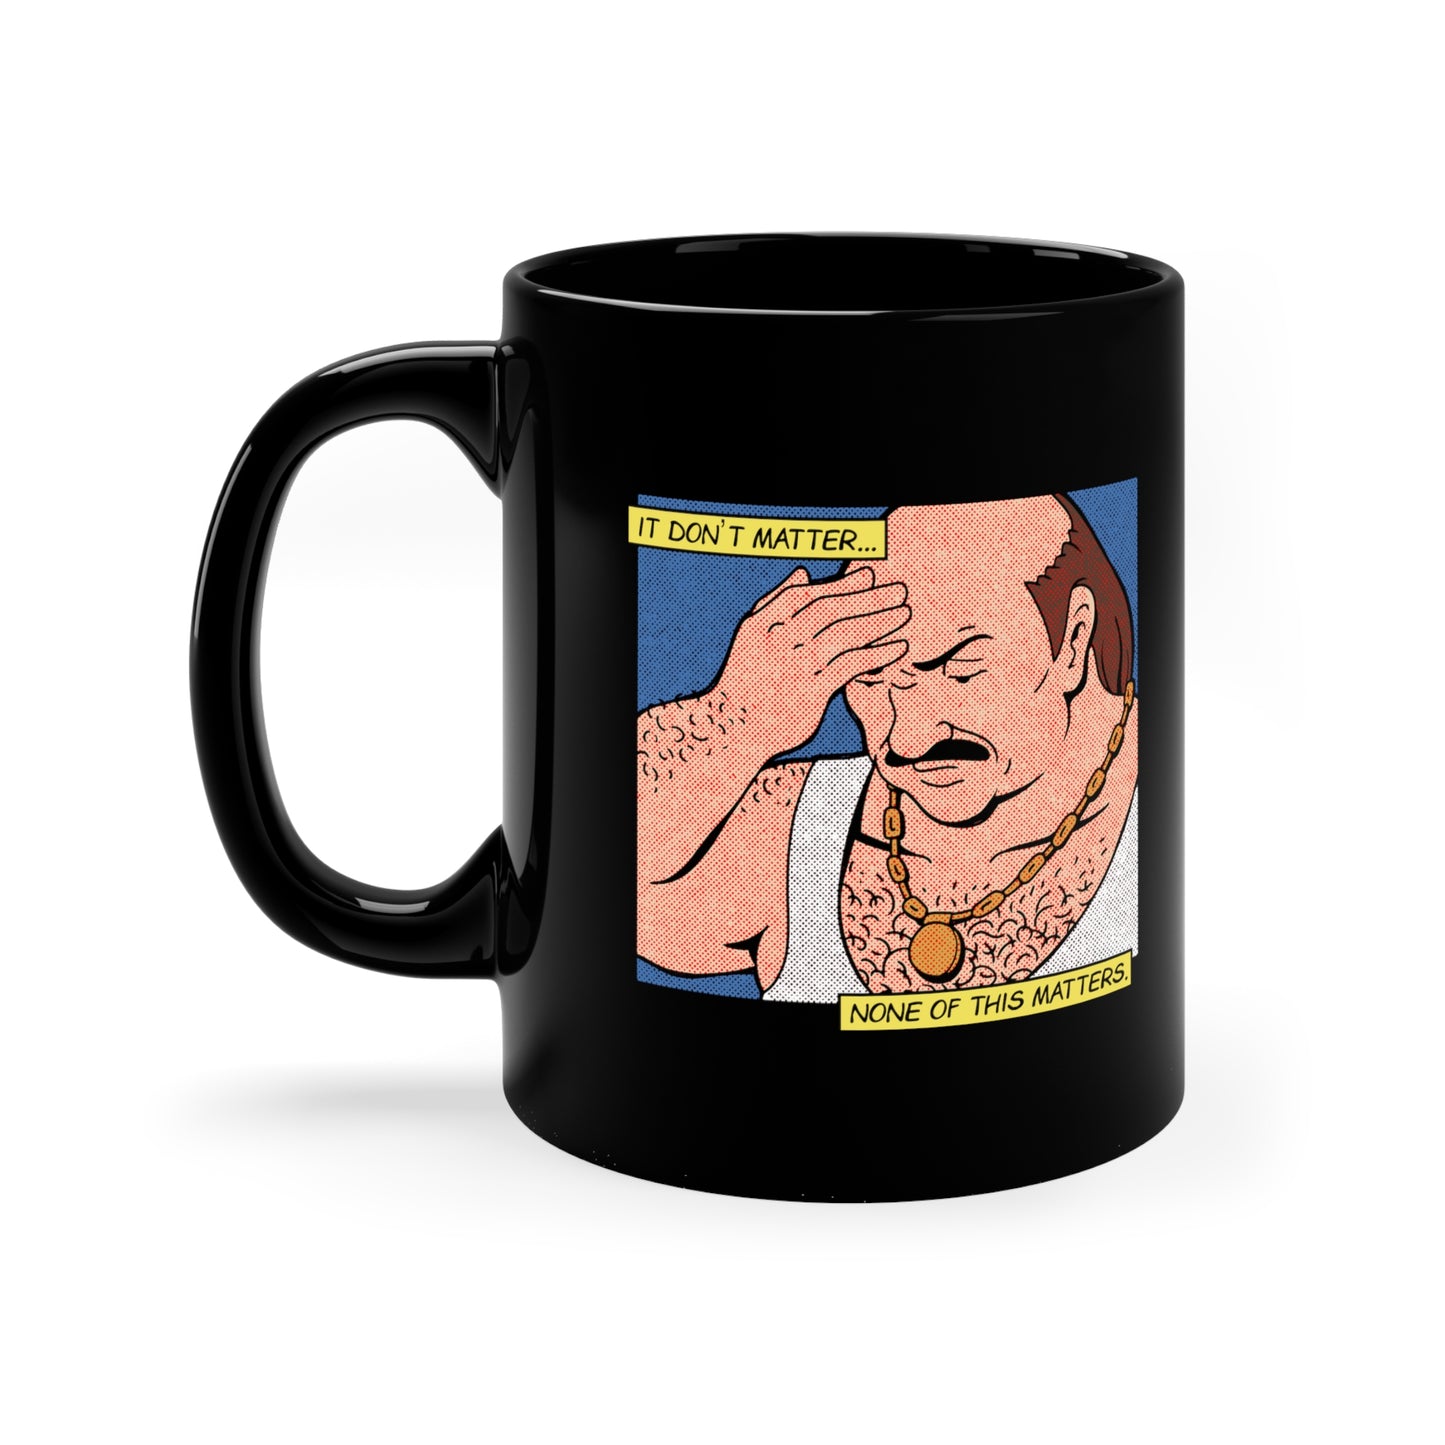 It Don't Matter ceramic mug